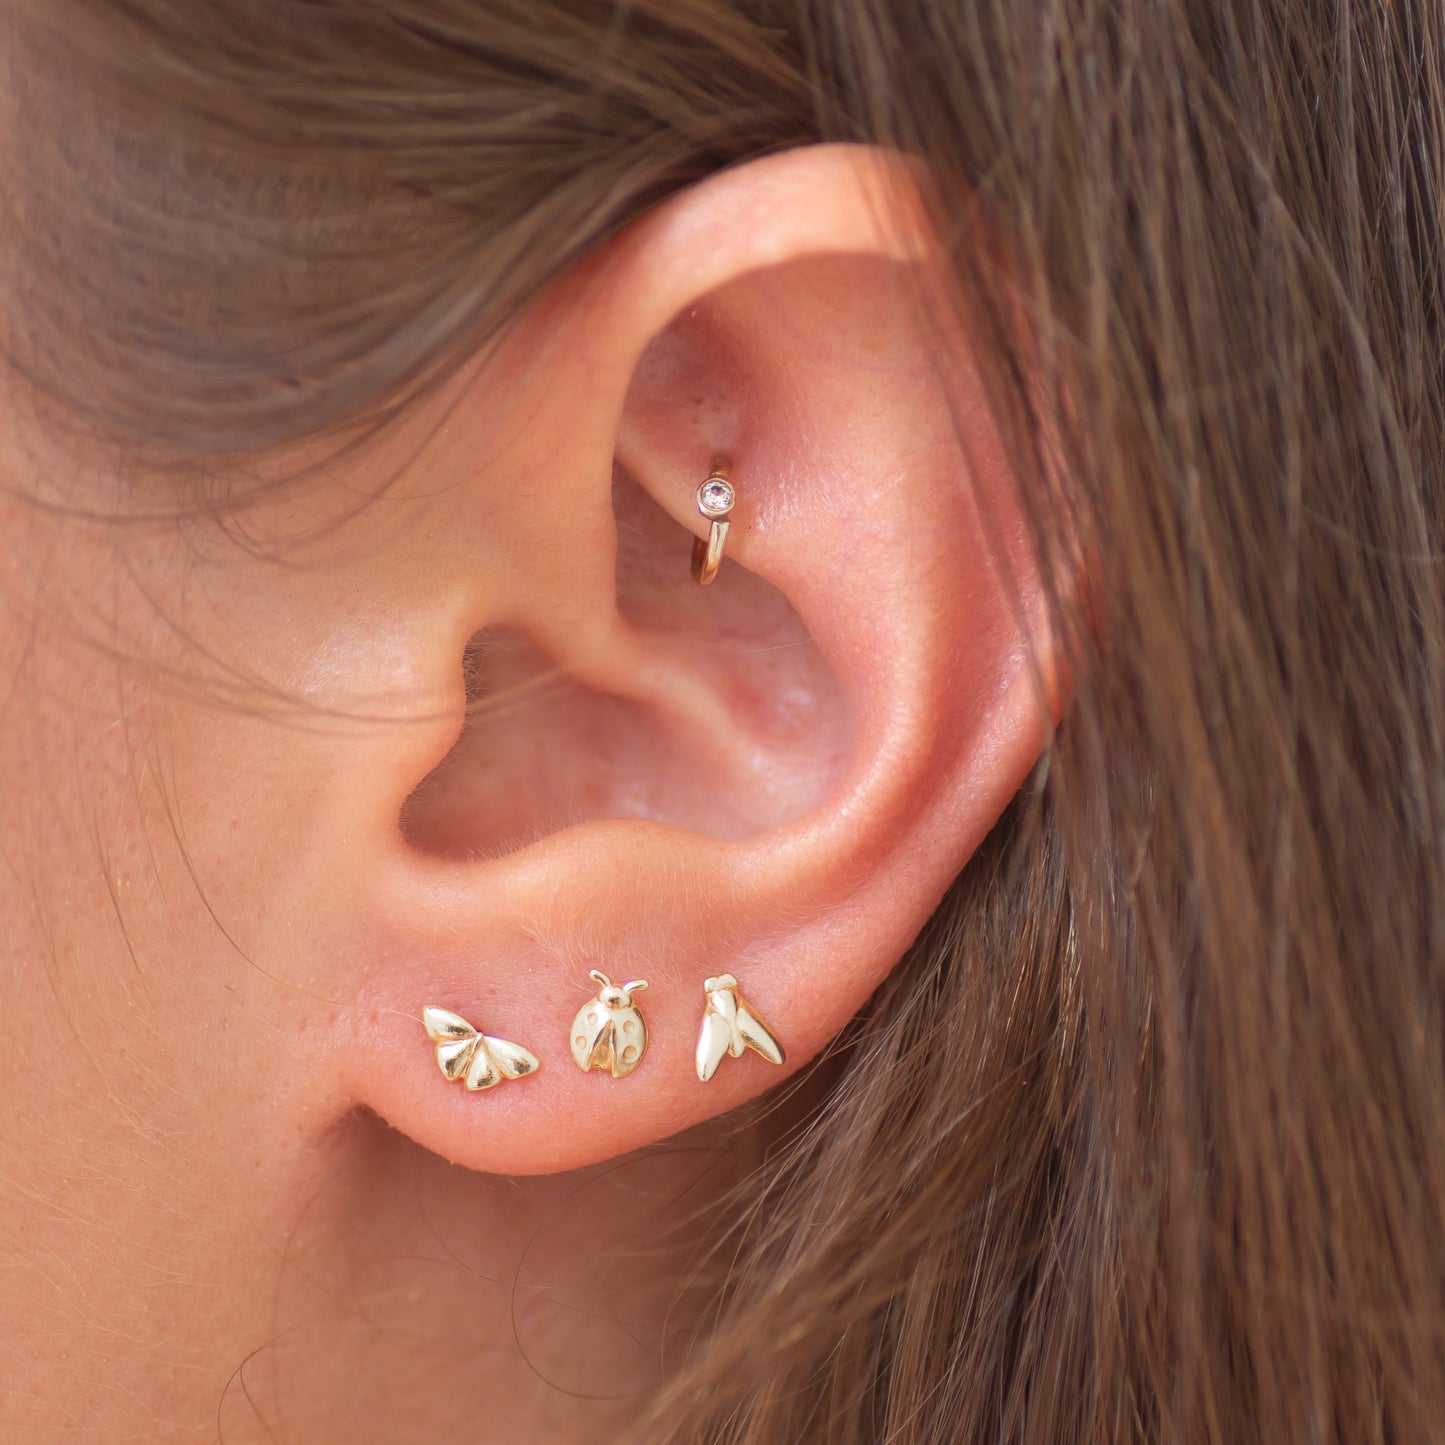 Ladybug earring stud 14k gold